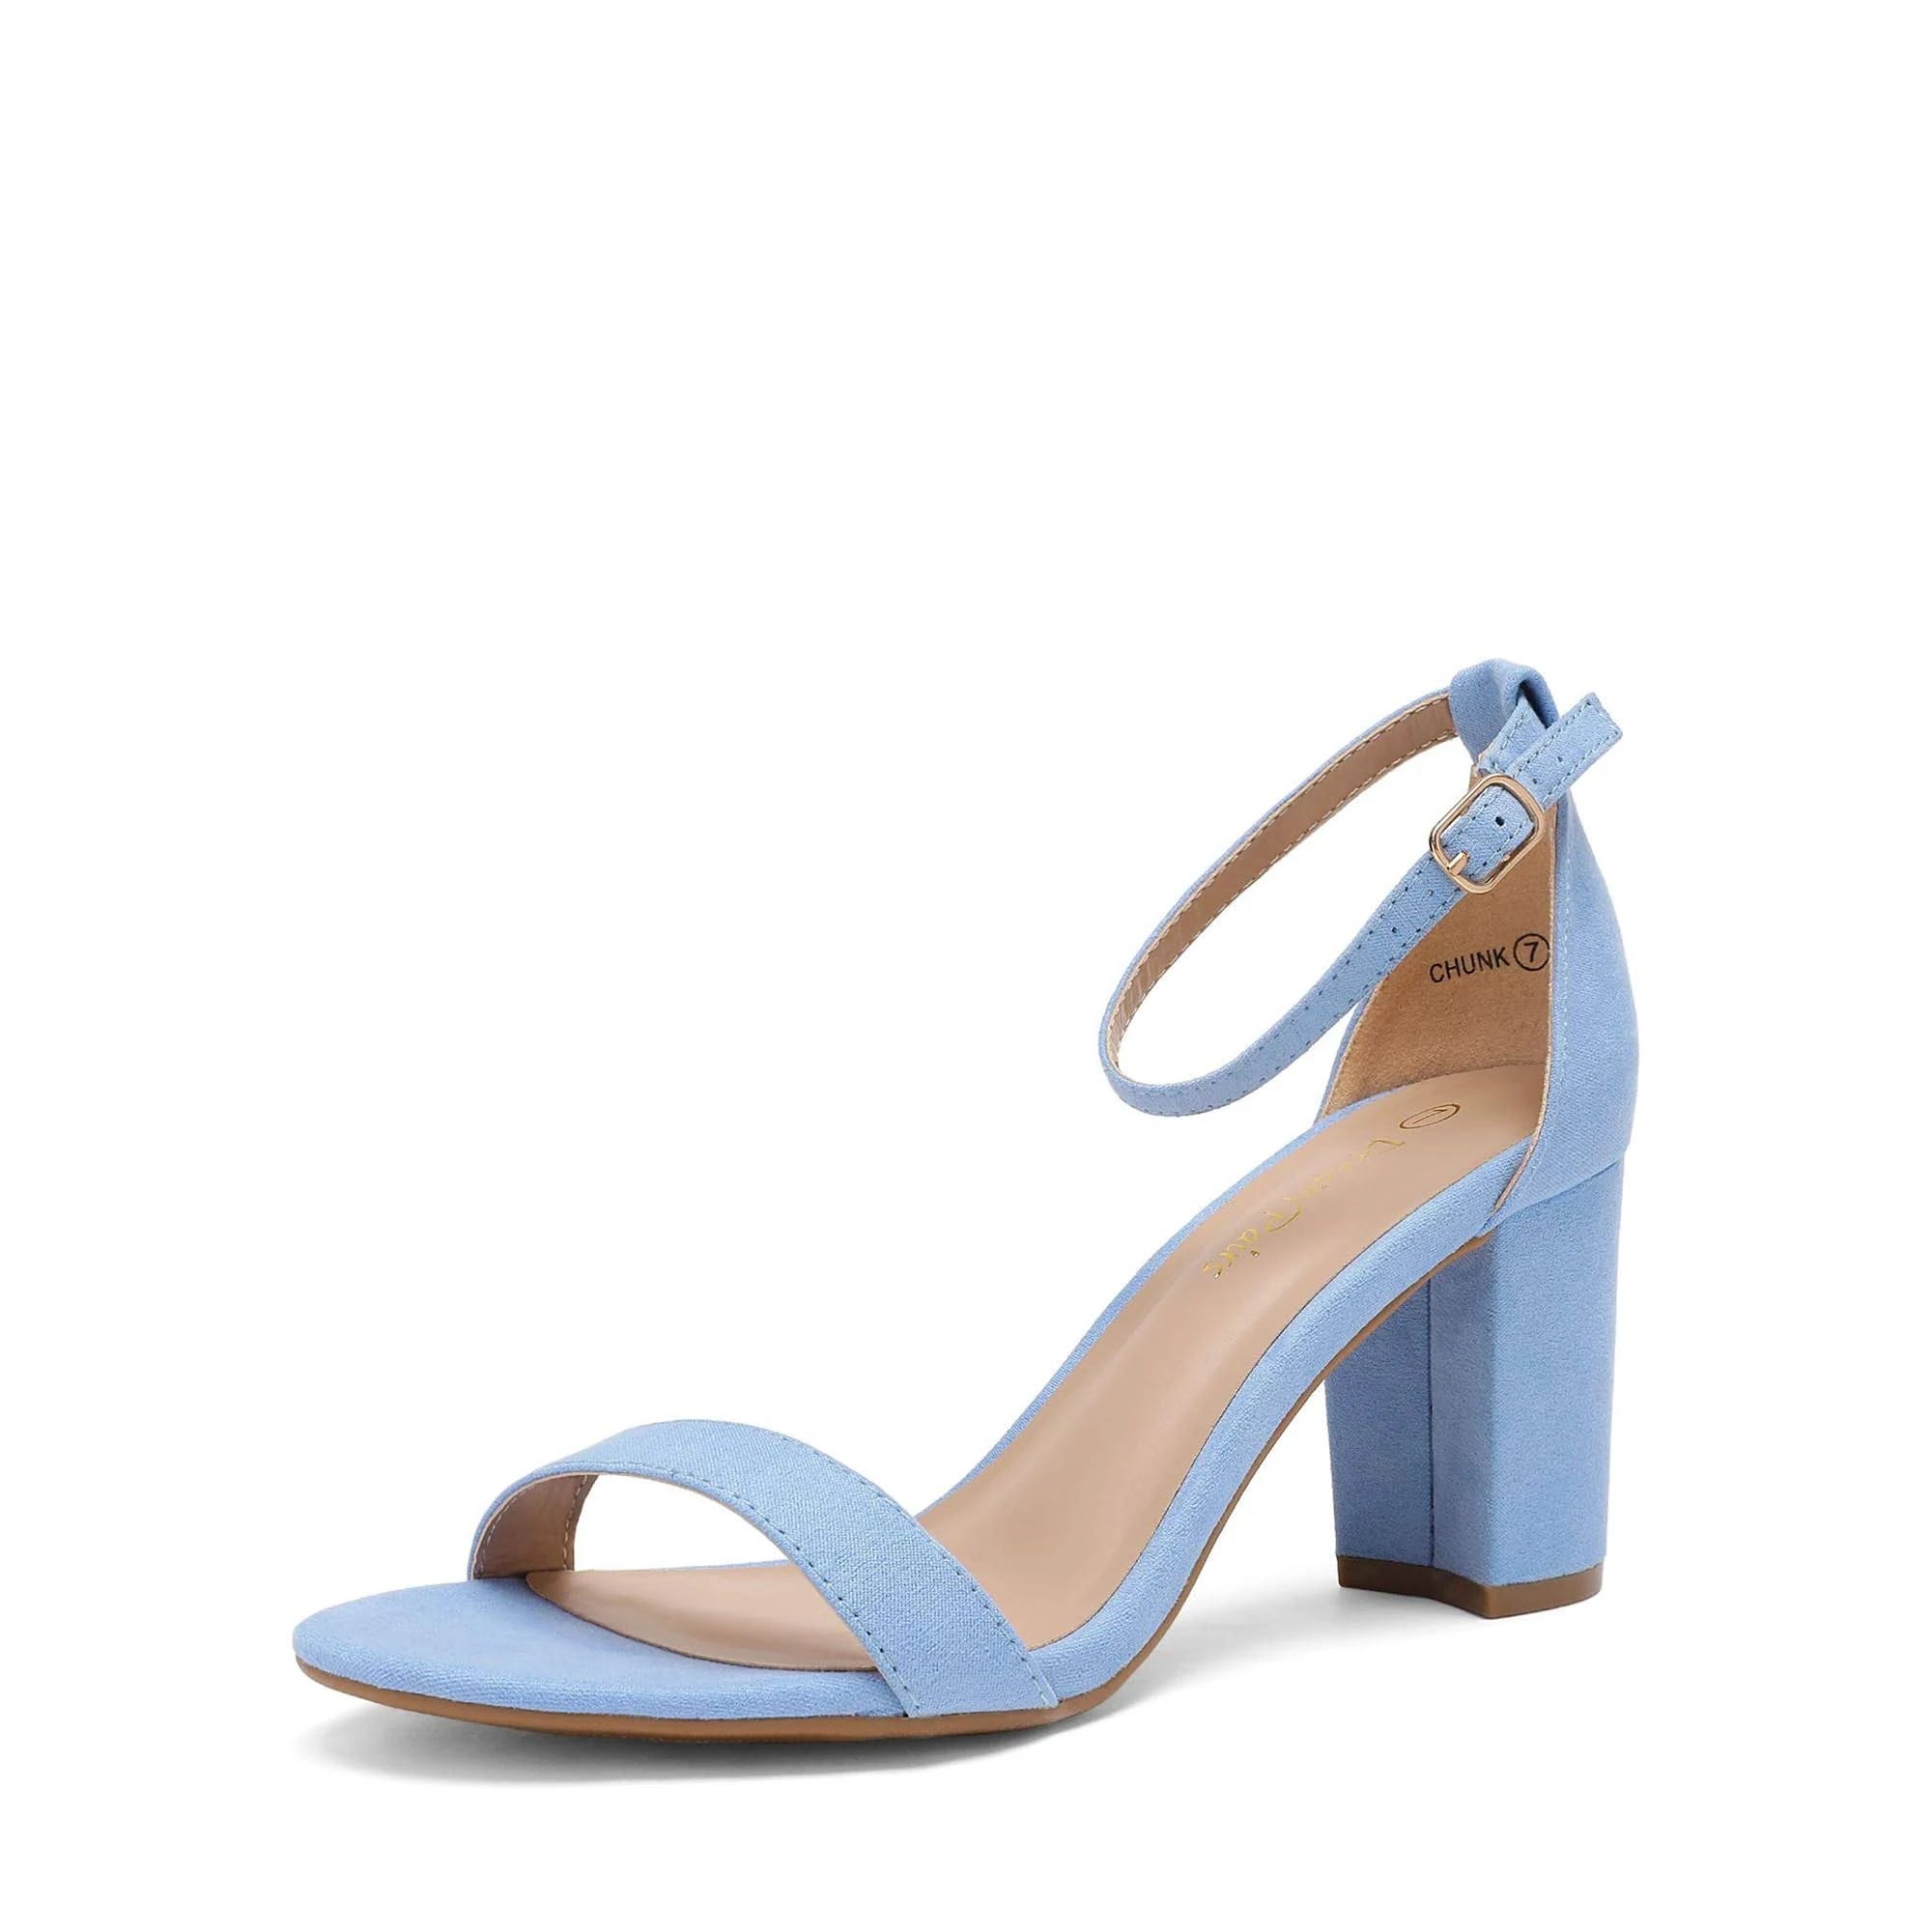 Elegant Navy Blue Block Heel Sandals with Adjustable Buckle | Image